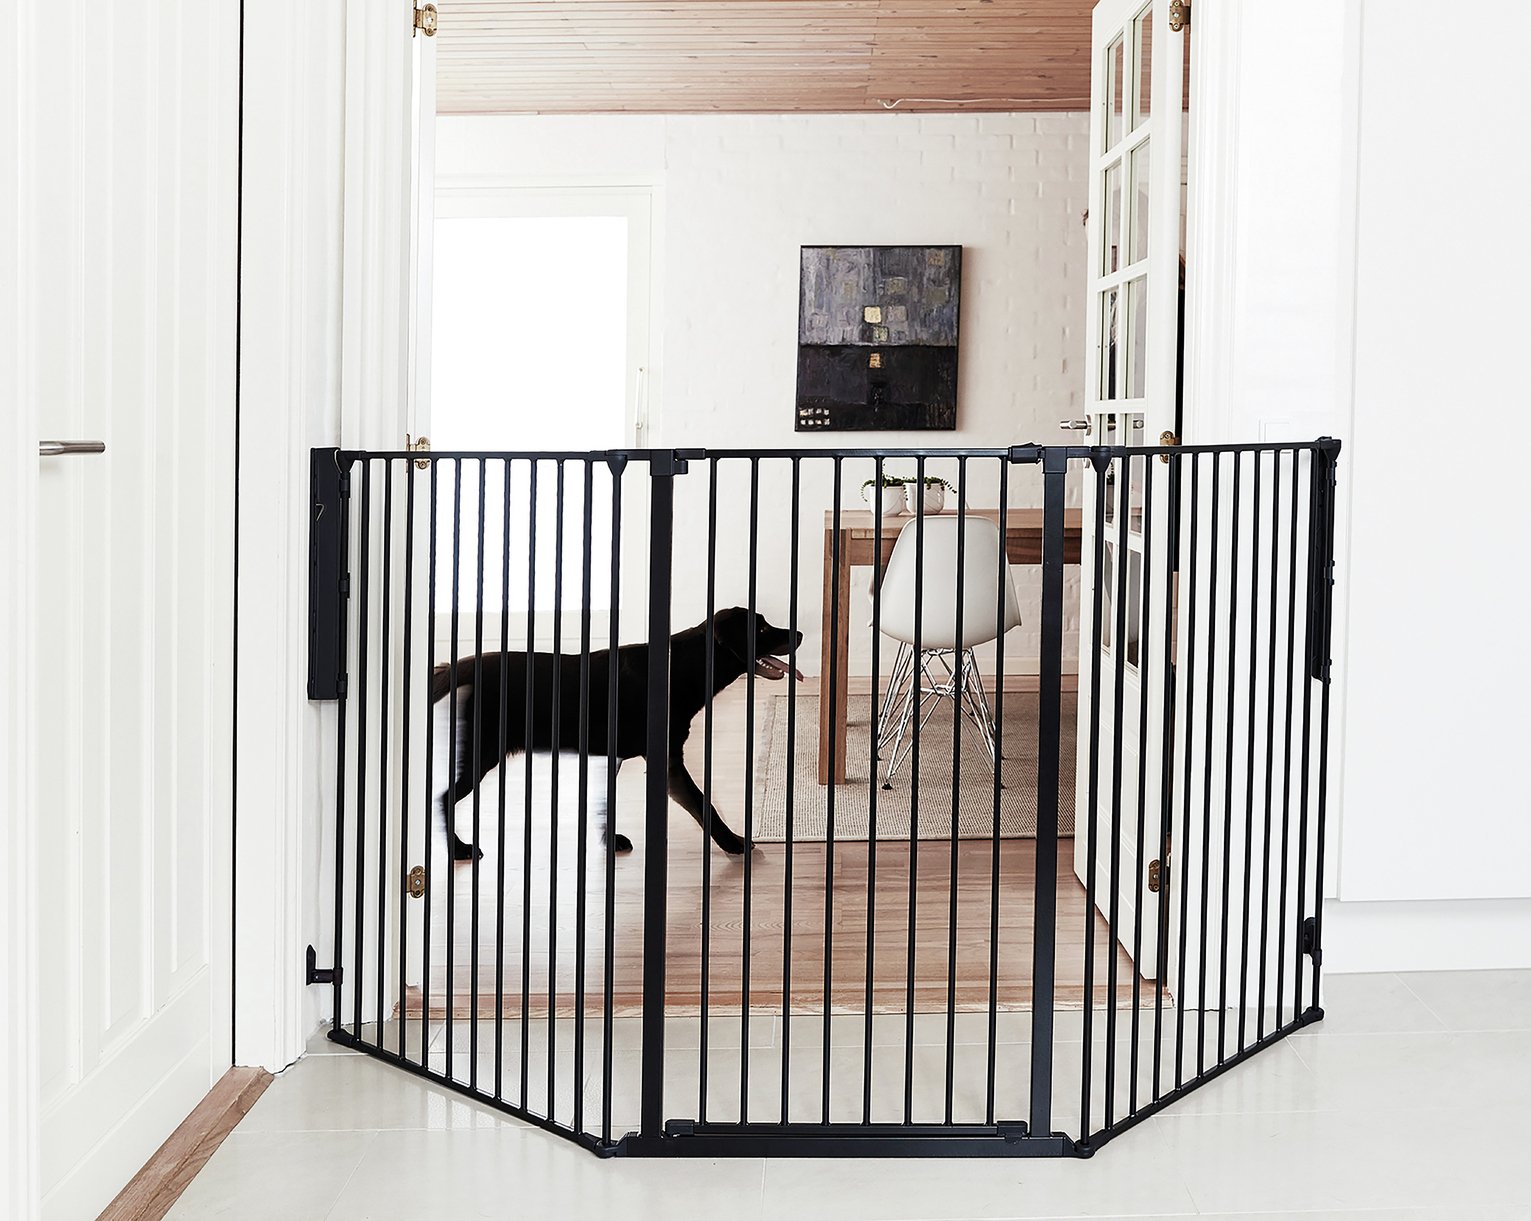 scandinavian pet design gate